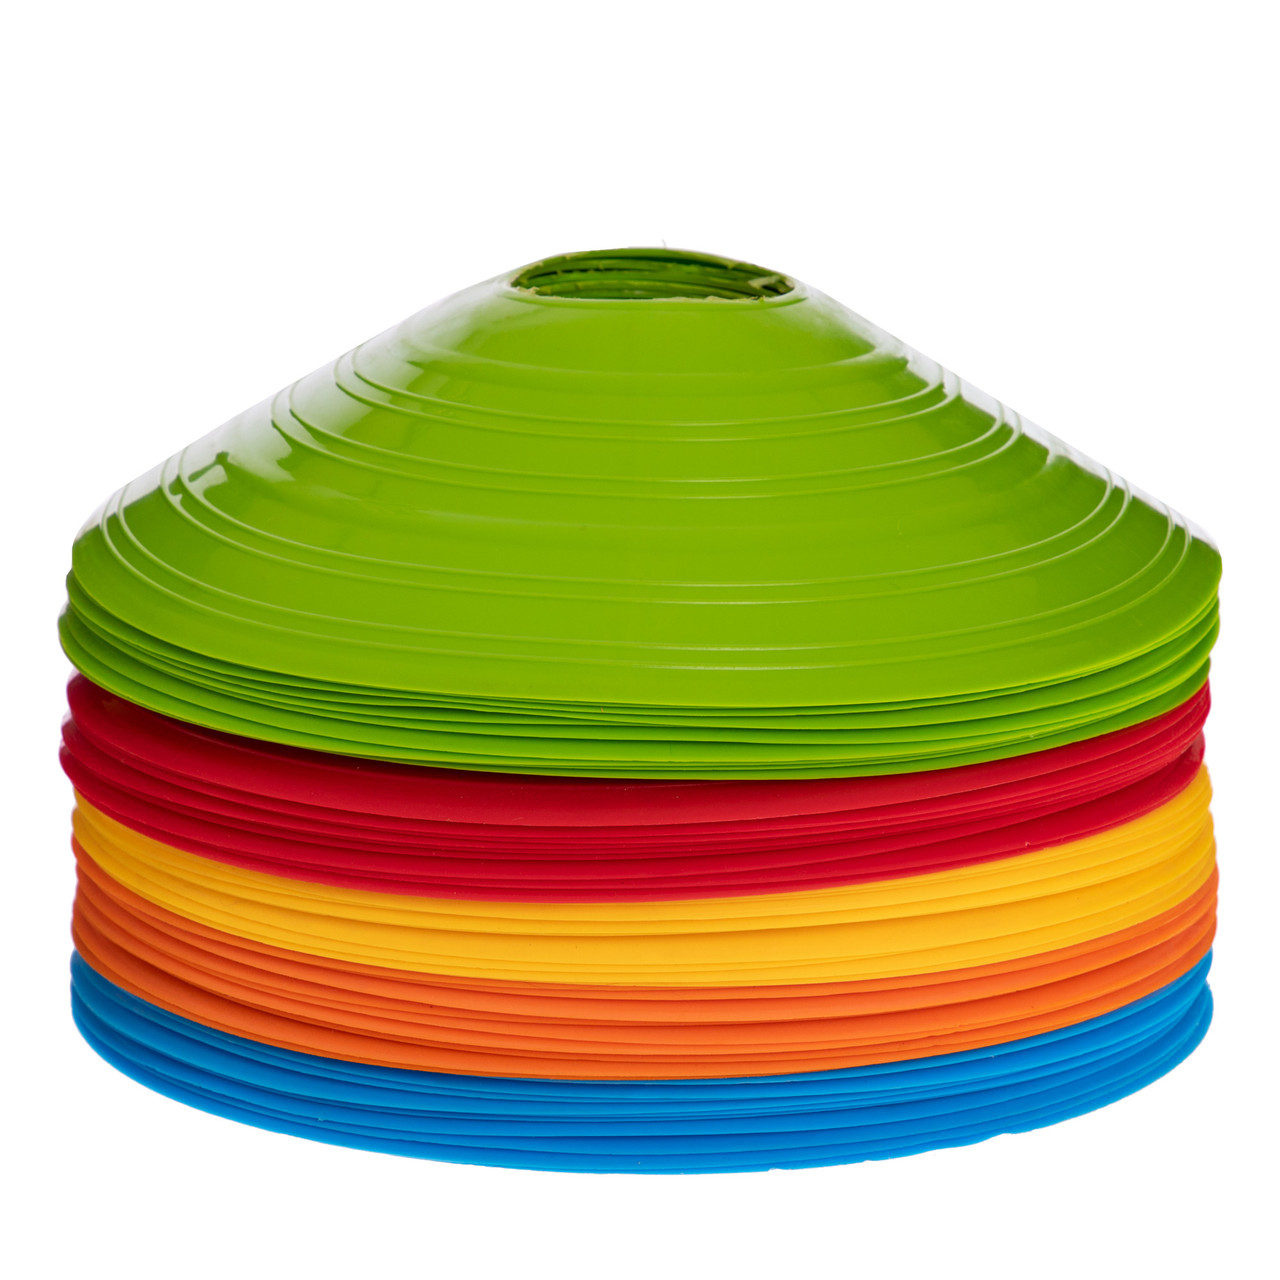 Фішки для розмітки поля 50шт UR З-5899 (пластик, d-20см, комплект 50шт, кольори в асортименті)